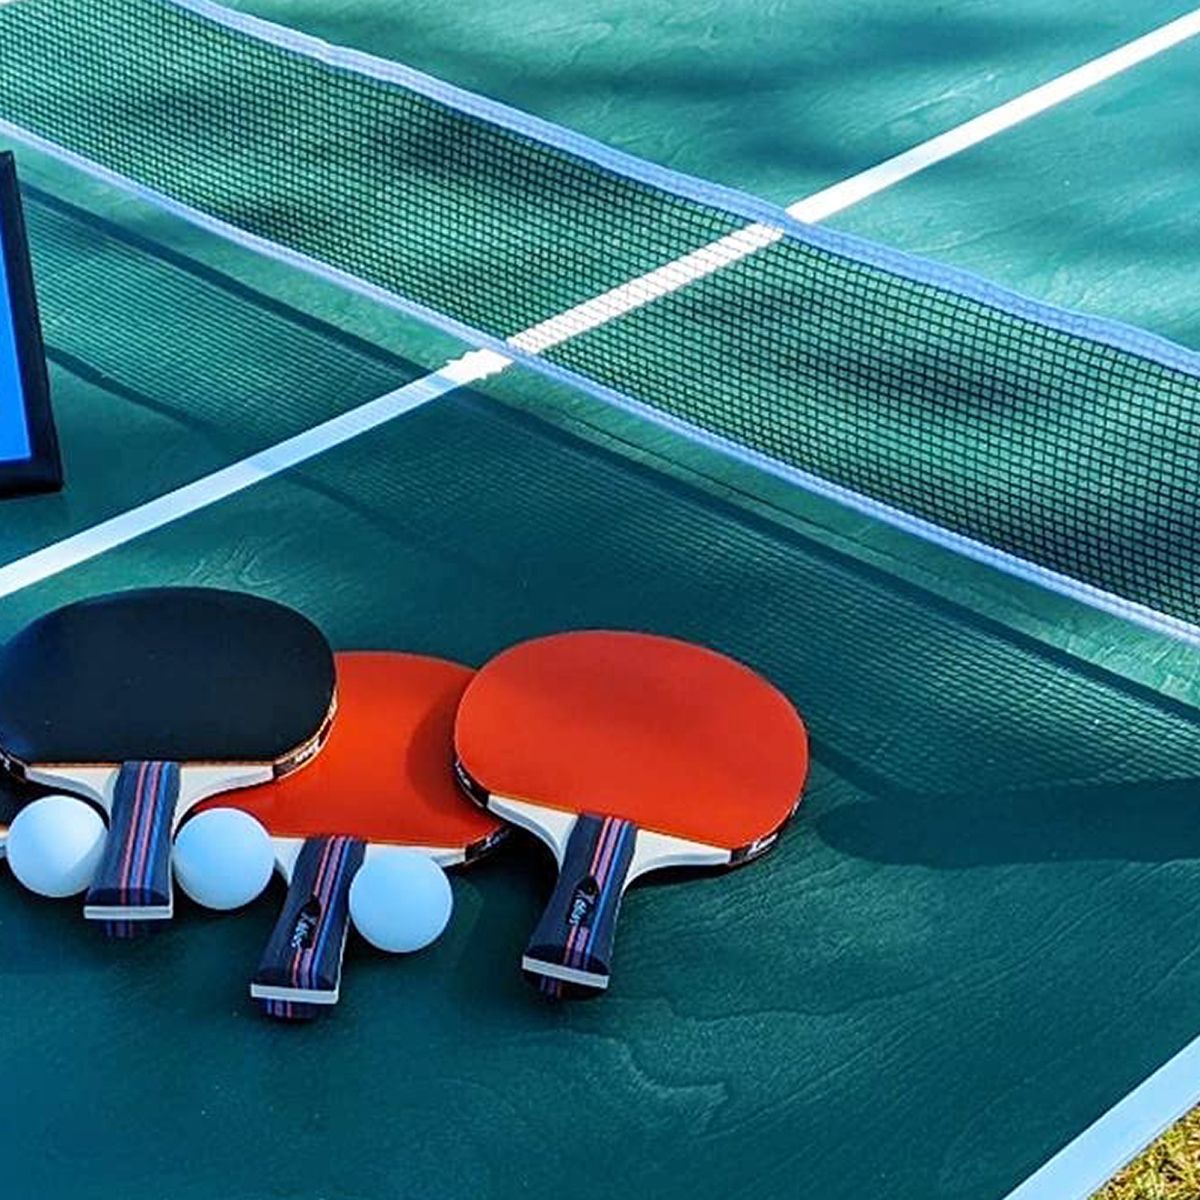 Las mejores palas para pasar un buen rato jugando al ping pong ·